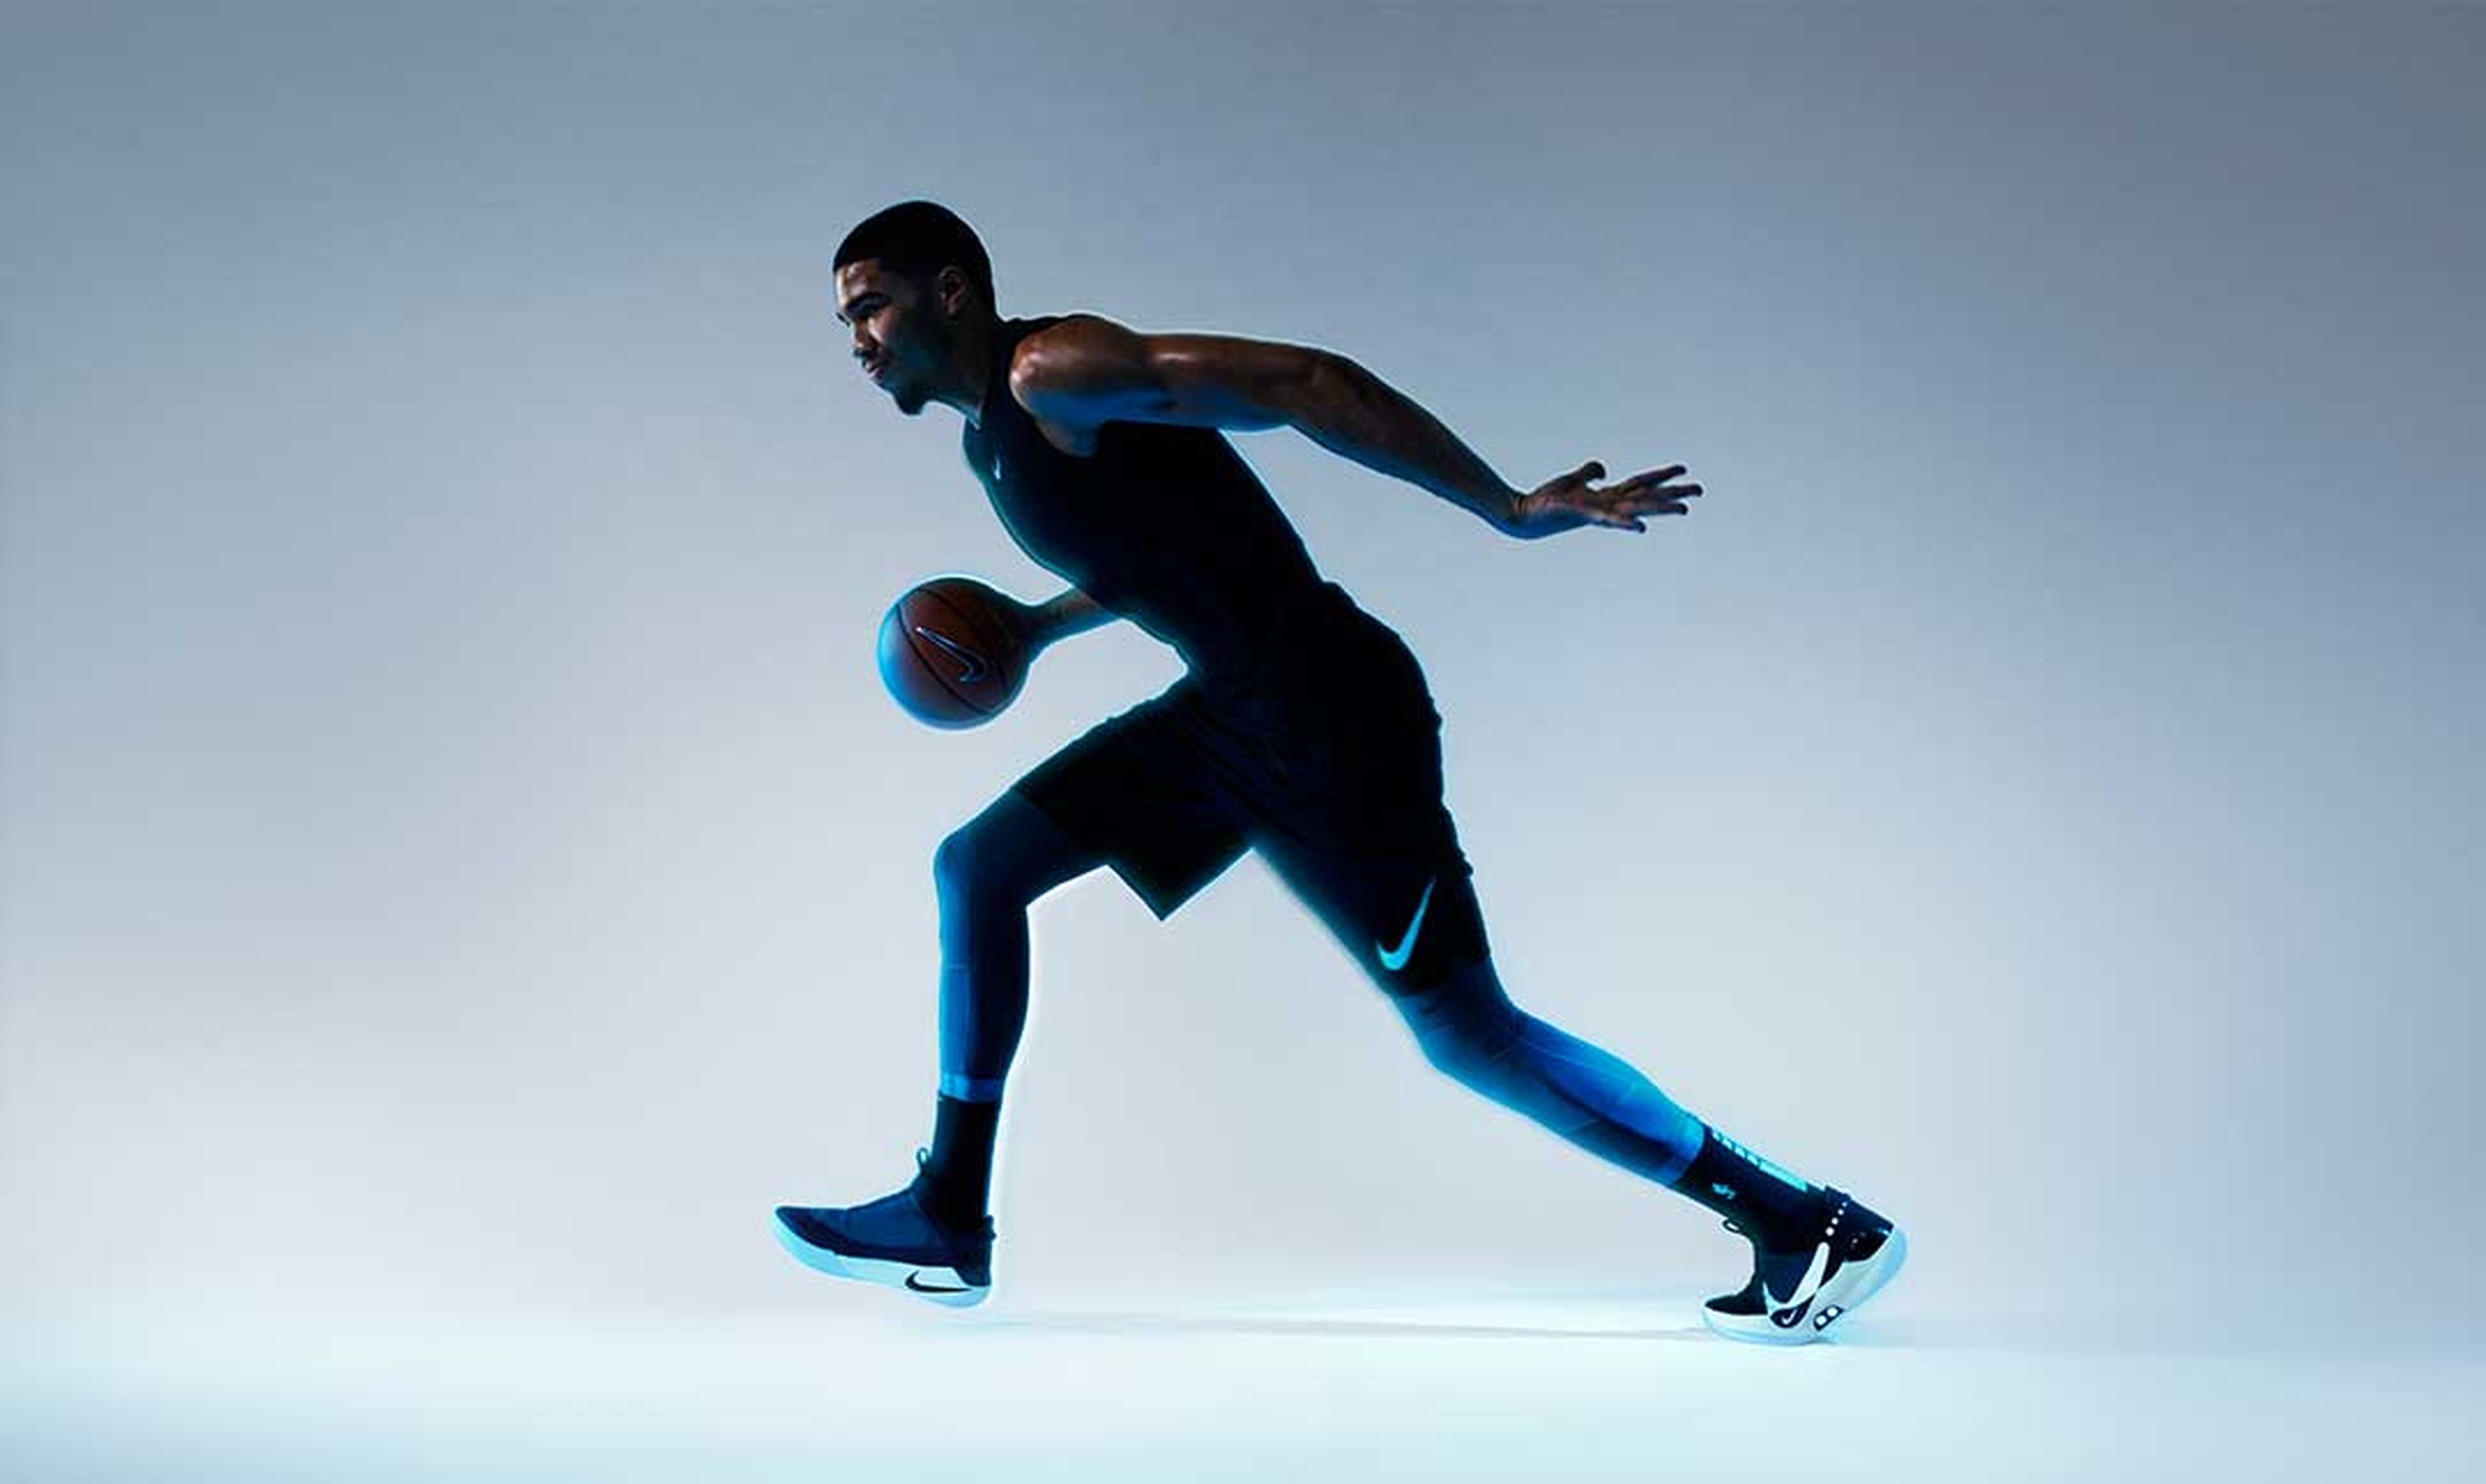 Conejo intercambiar Enriquecimiento Nike Adapt BB, las zapatillas inteligentes que se ajustan con una app |  Computer Hoy